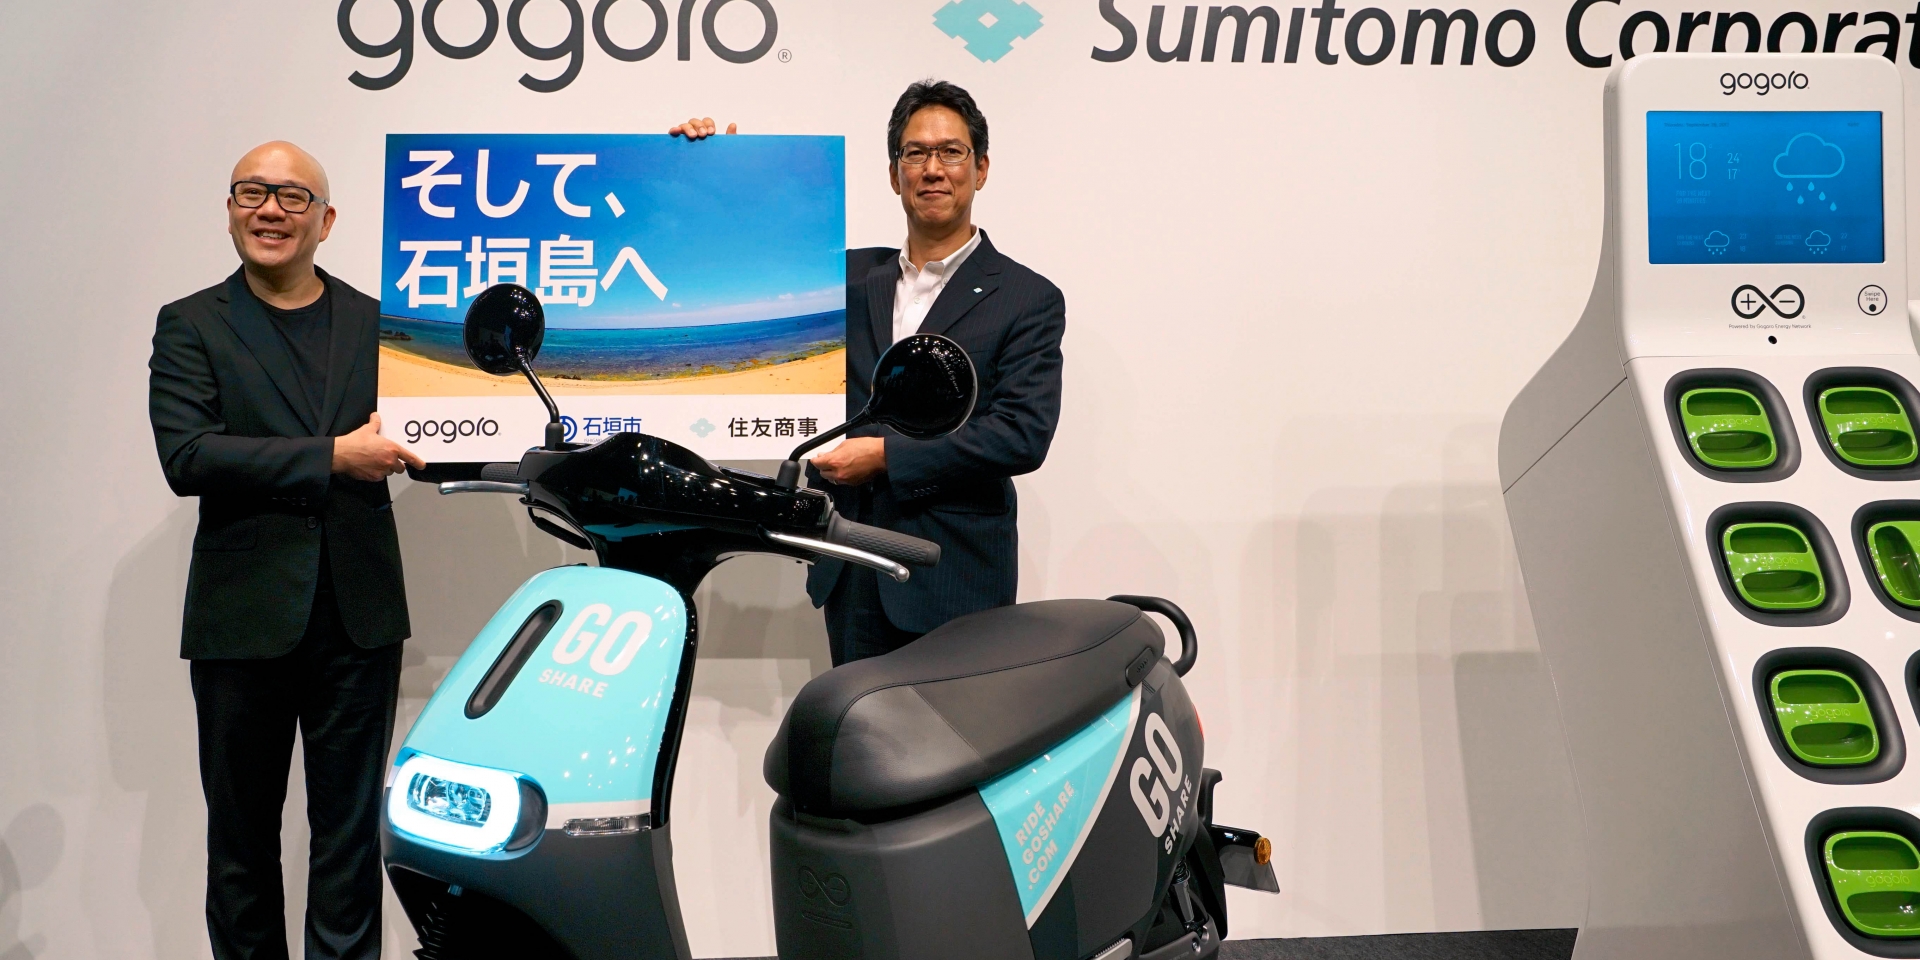 官方新聞。日本住友商事集團 和 Gogoro 宣布合作夥伴關係;全新的  GOSHARE™ 車輛共享服務將於今年在日本推出